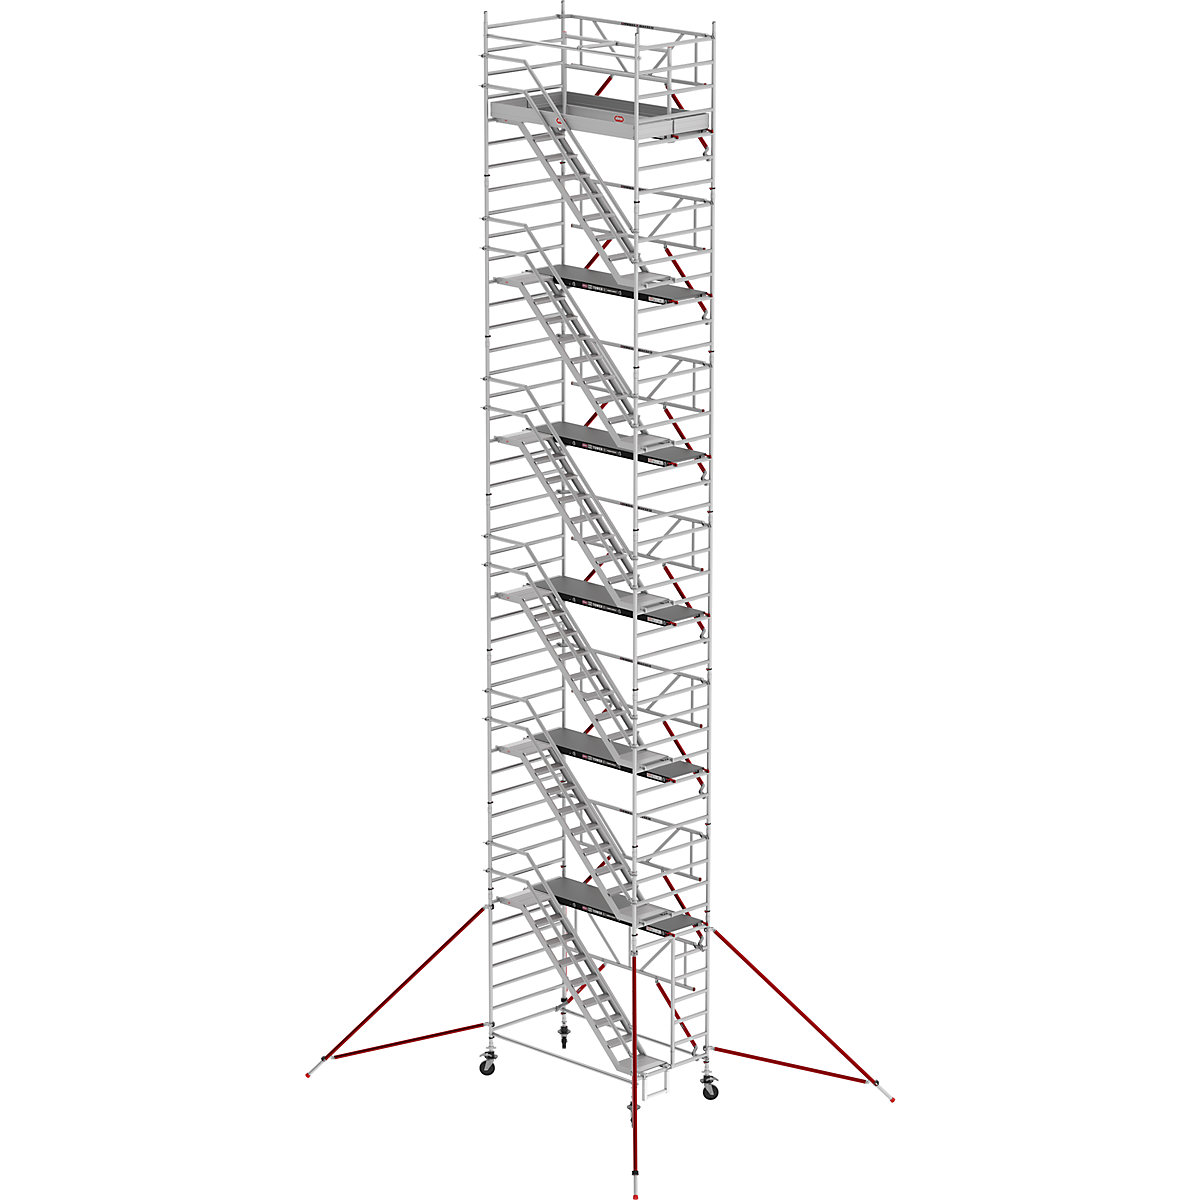 Treppengerüst RS TOWER 53 breit Altrex, Fiber-Deck®, Länge 1,85 m, Arbeitshöhe 14,20 m